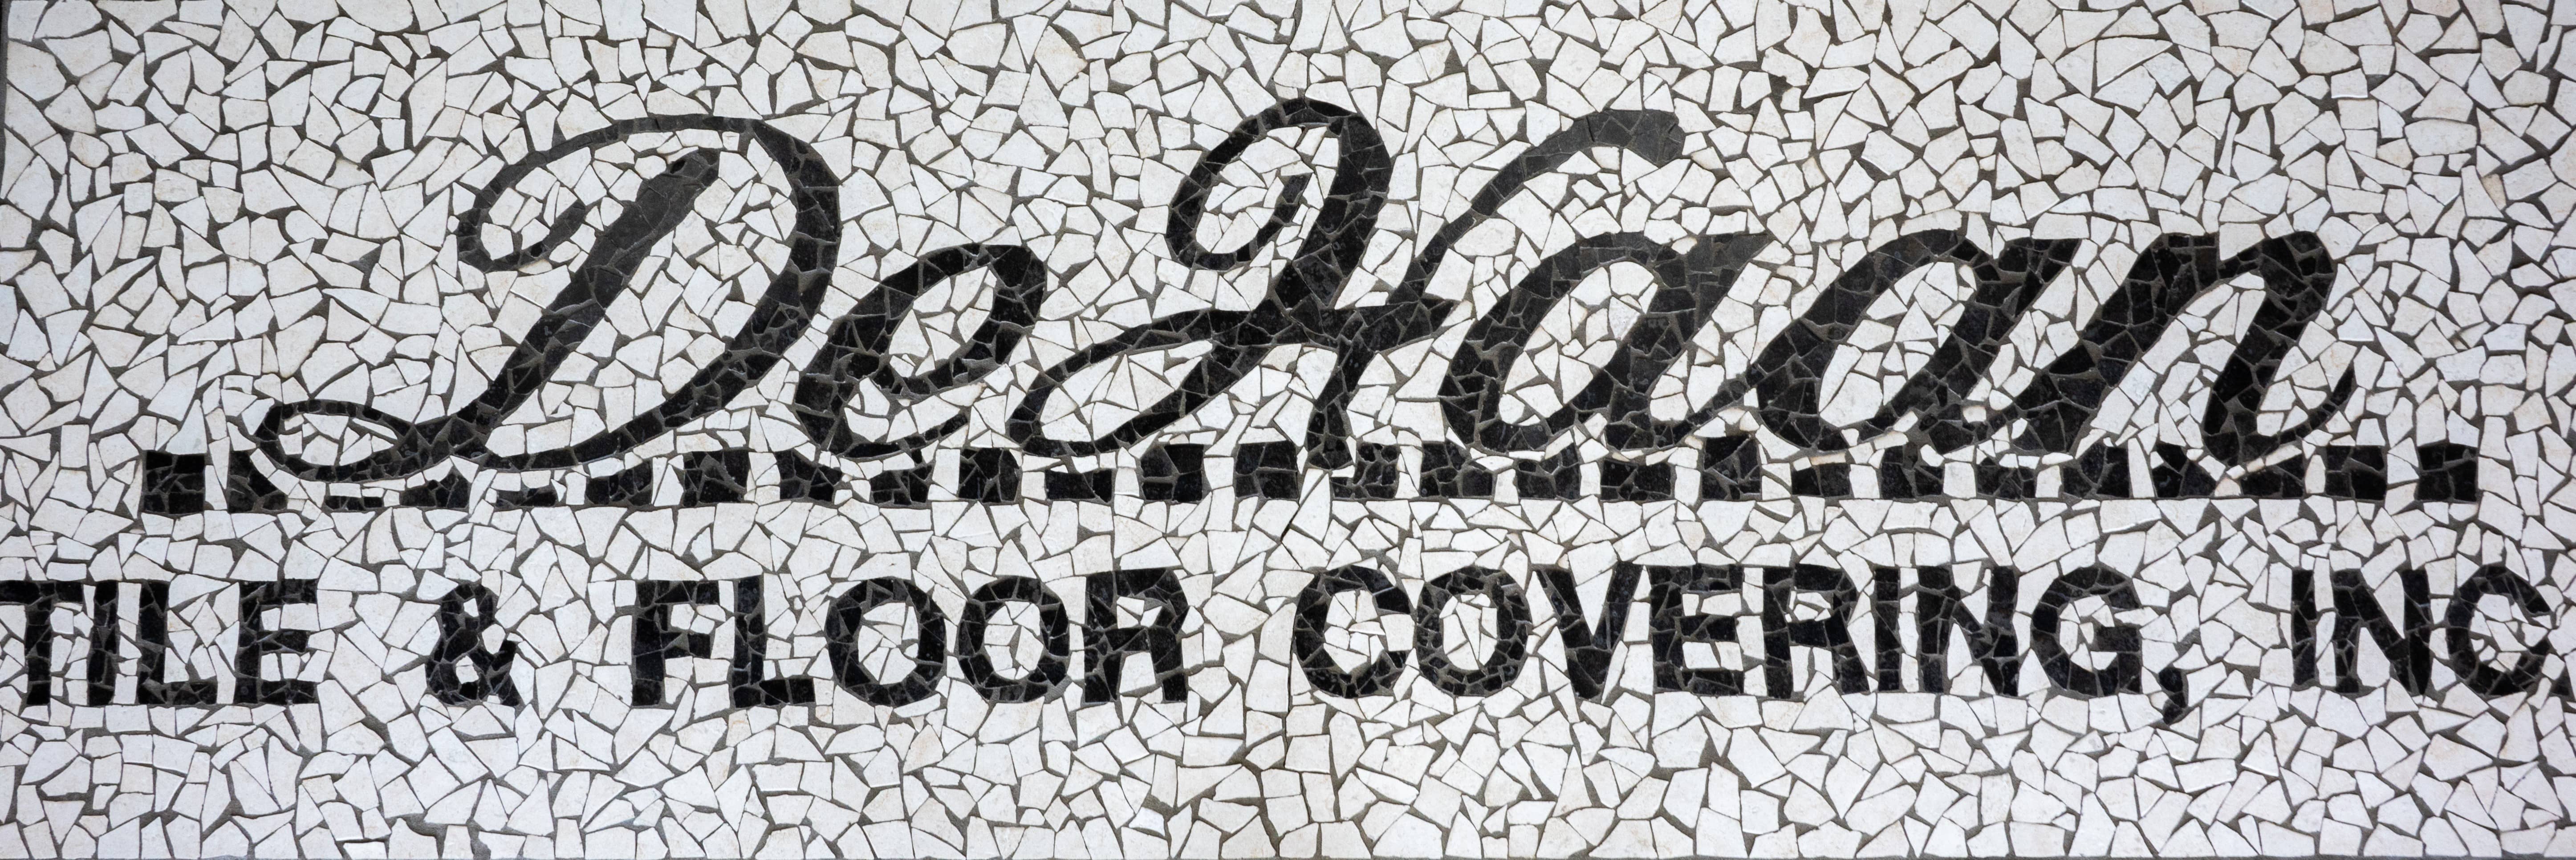 Logo | DeHaan Tile & Floor Covering